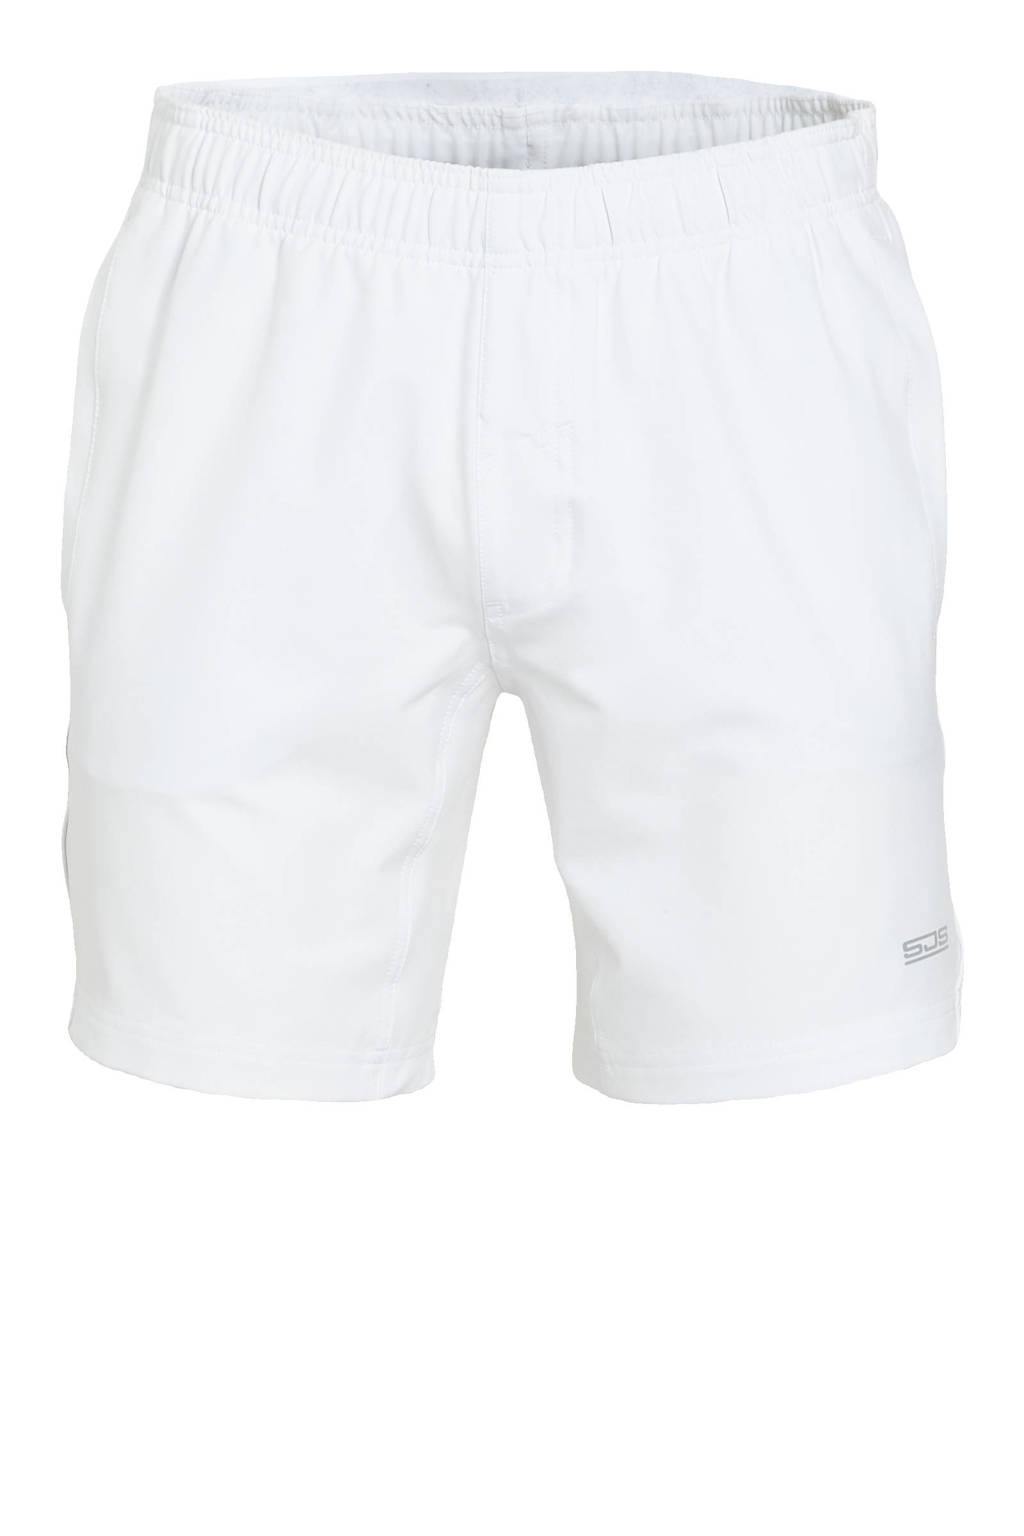 Witte heren Sjeng Sports sportshort Antal van polyester met regular fit, regular waist, elastische tailleband met koord en logo dessin